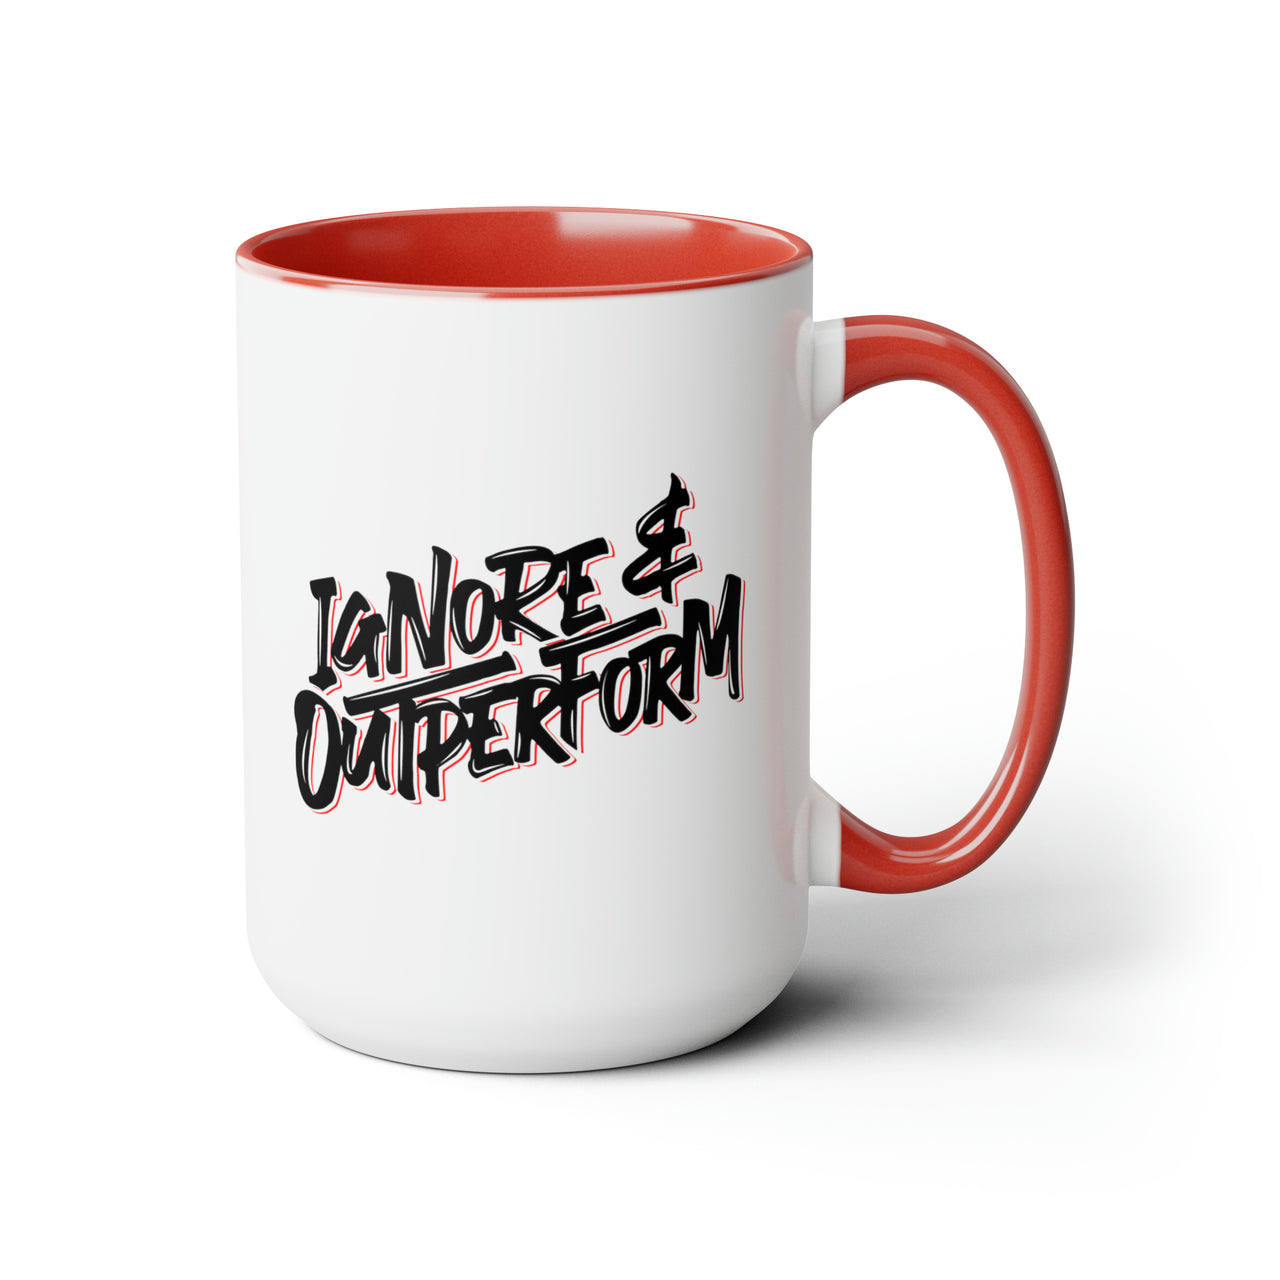 Ignore & Outperform Mug